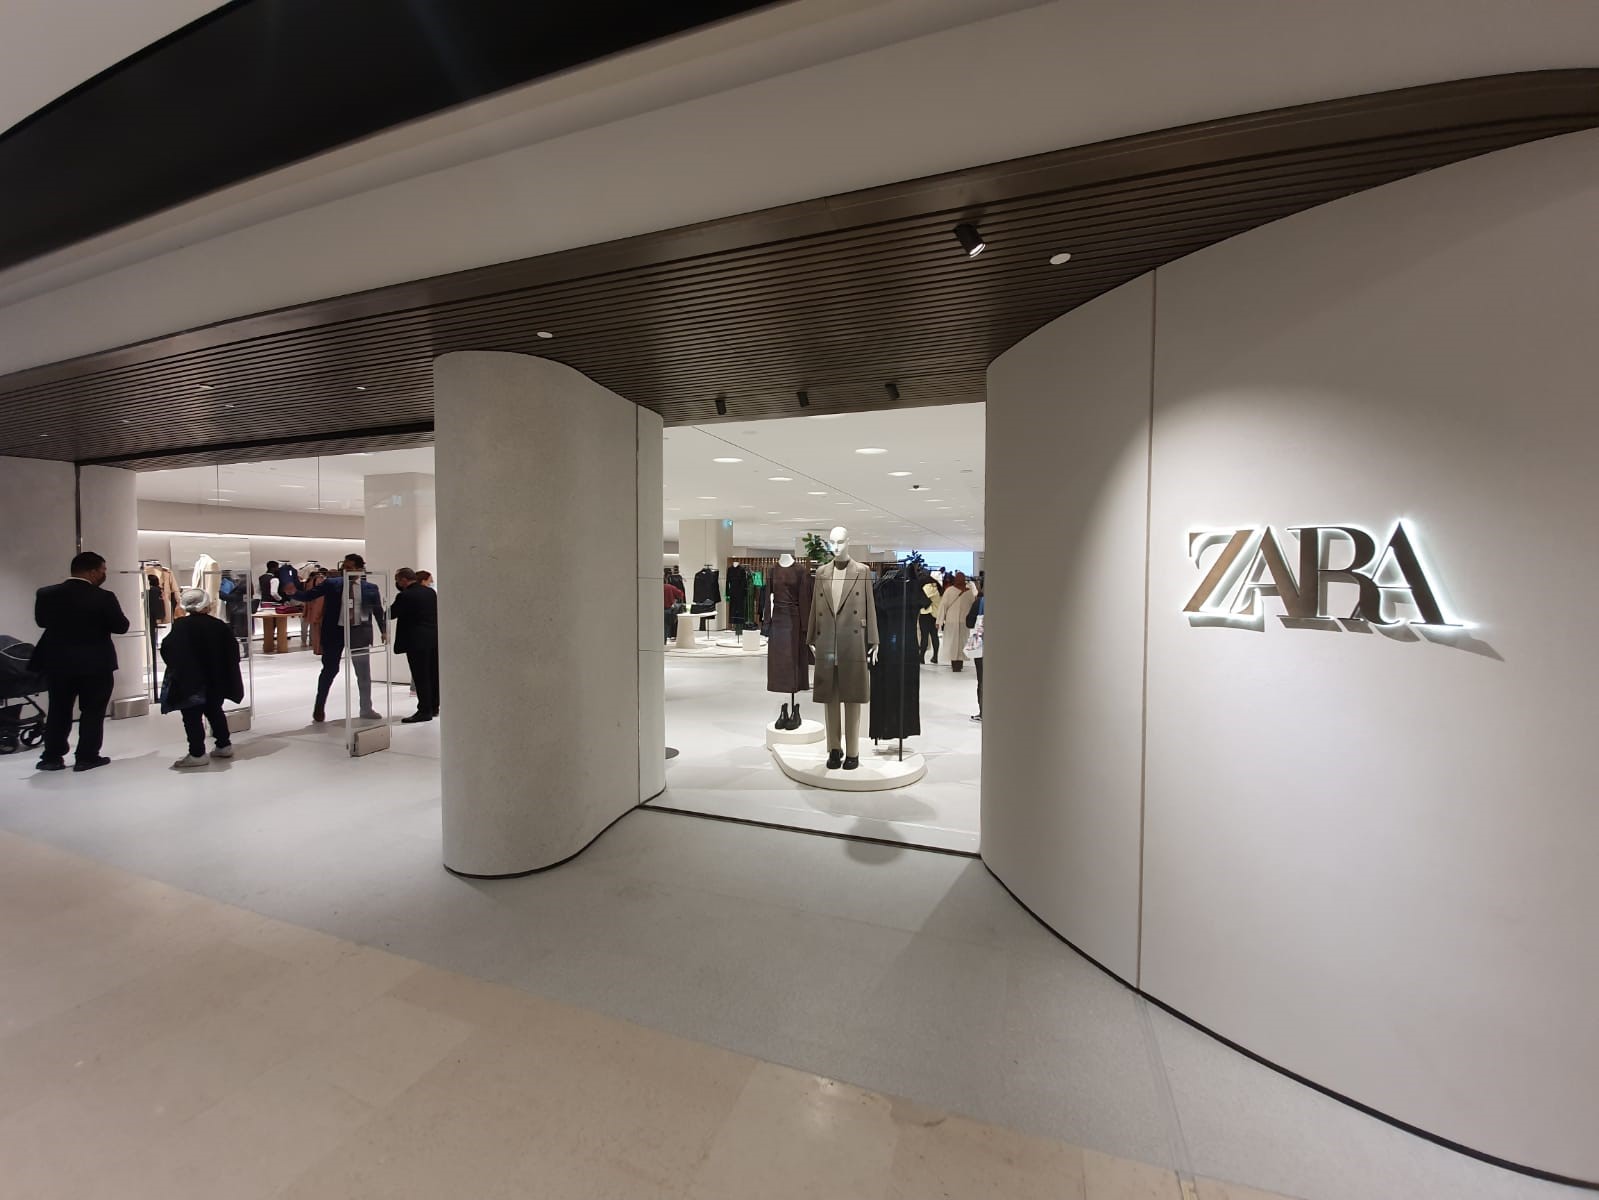 Hammerson France on X: "Zara arrive aux 3 Fontaines ! L'enseigne du groupe  Inditex fait une arrivée remarquée avec un tout nouveau concept design à  découvrir sur 3670m². Ouvert aujourd'hui, le magasin